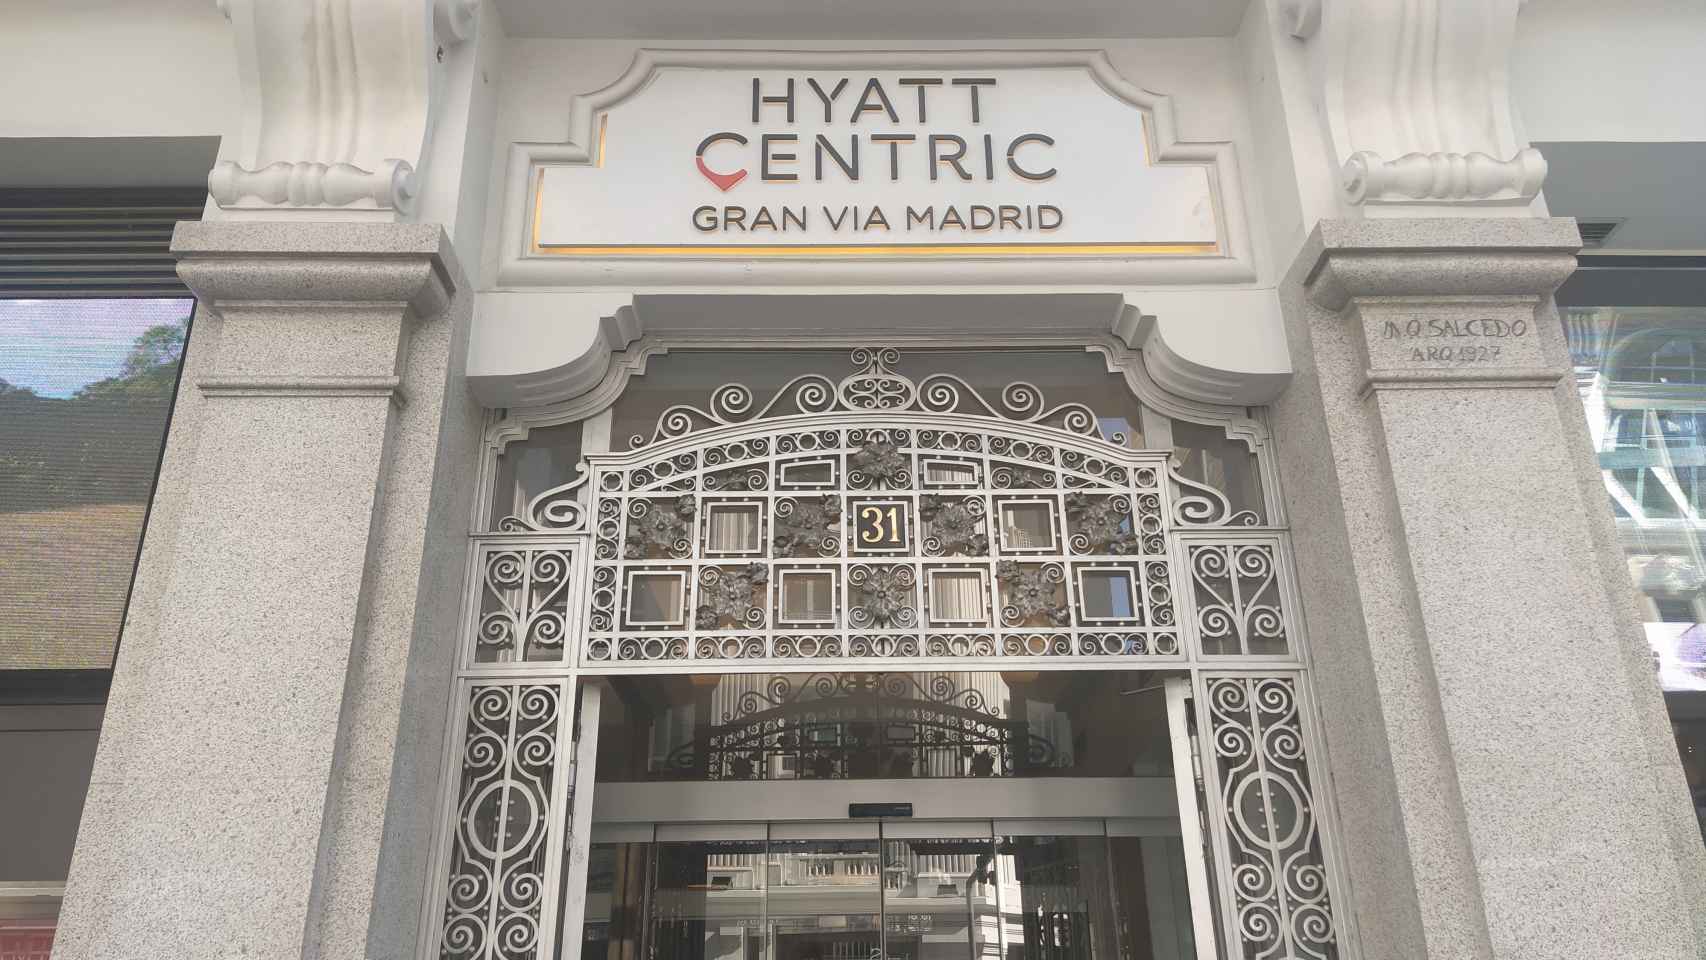 El hotel Hyatt Centric Gran Vía, situado en el número 31 de la citada calle.